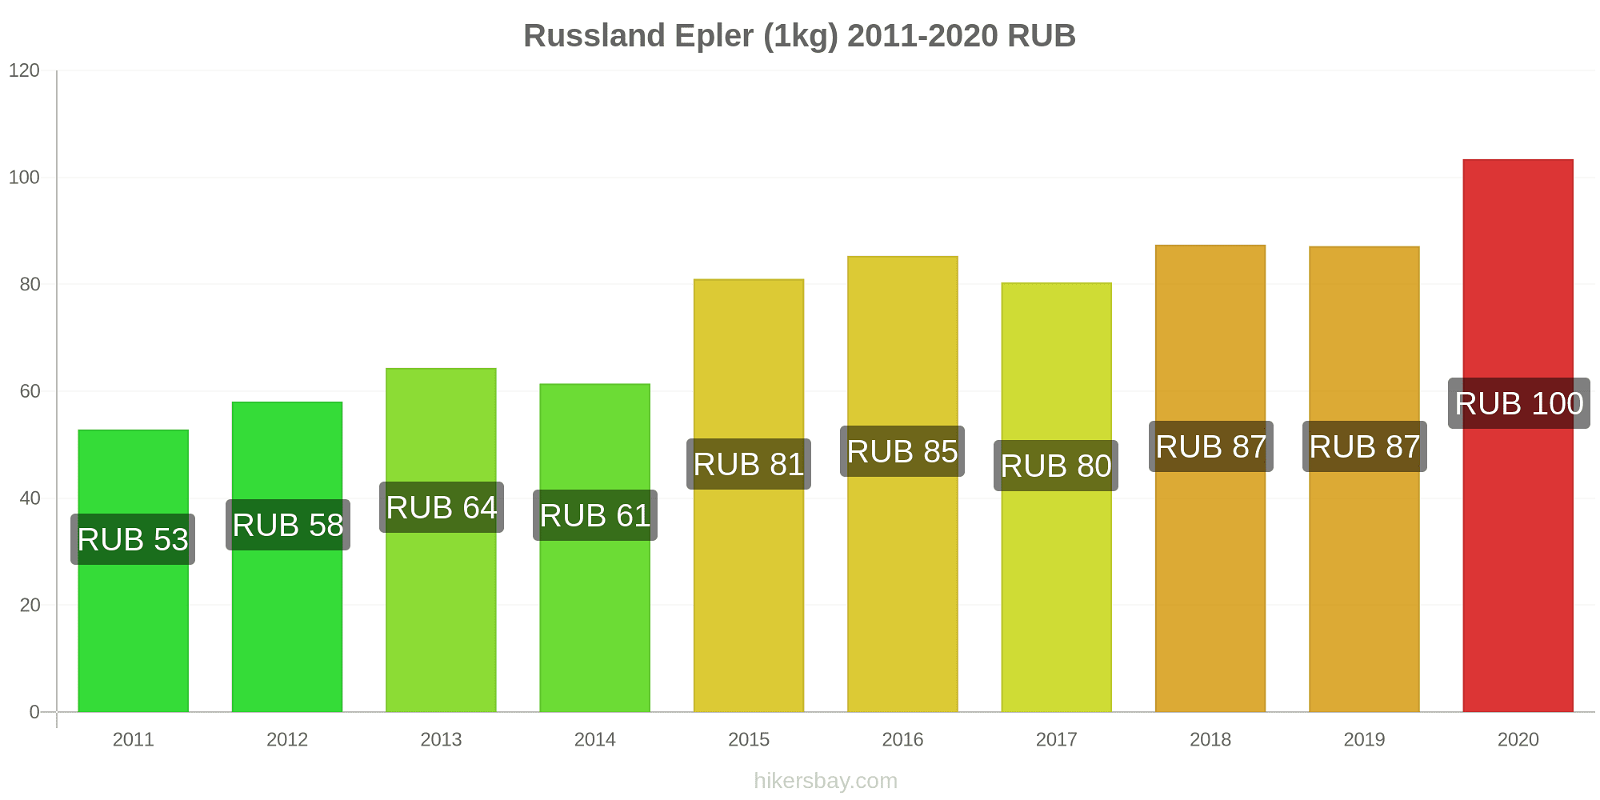 Russland prisendringer Epler (1kg) hikersbay.com